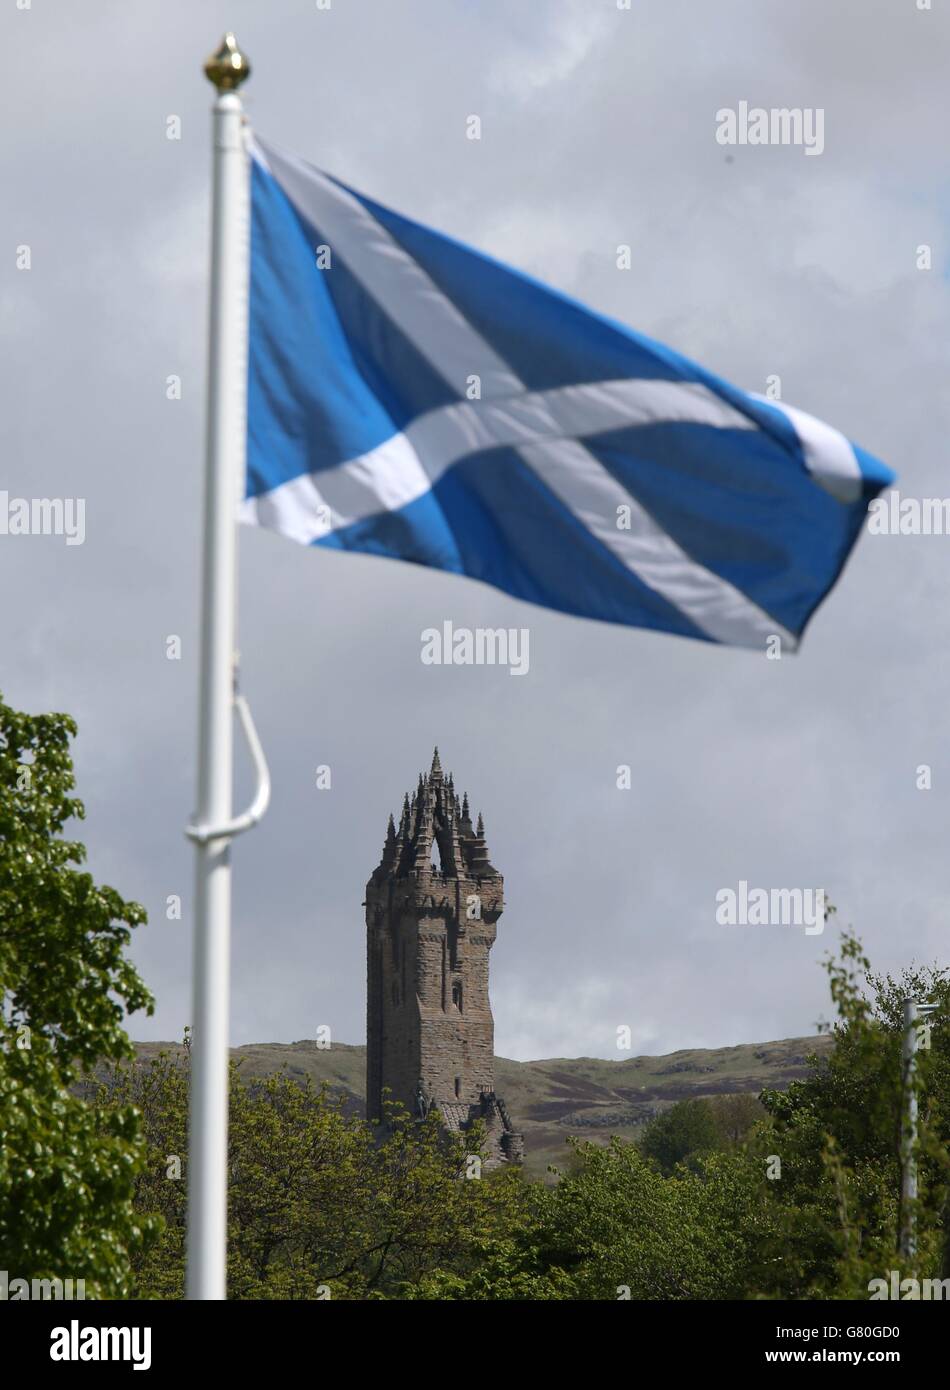 Eine Flagge von Saltyre wird auf einem permanenten Fahnenmast vor dem Wallace Monument als Denkmal an der Stelle der "Braveheart Schlacht" angehoben, wo William Wallace und Andrew de Moray Schottland zum Sieg bei der Schlacht von Stirling Bridge im Jahr 1297 führten. Stockfoto